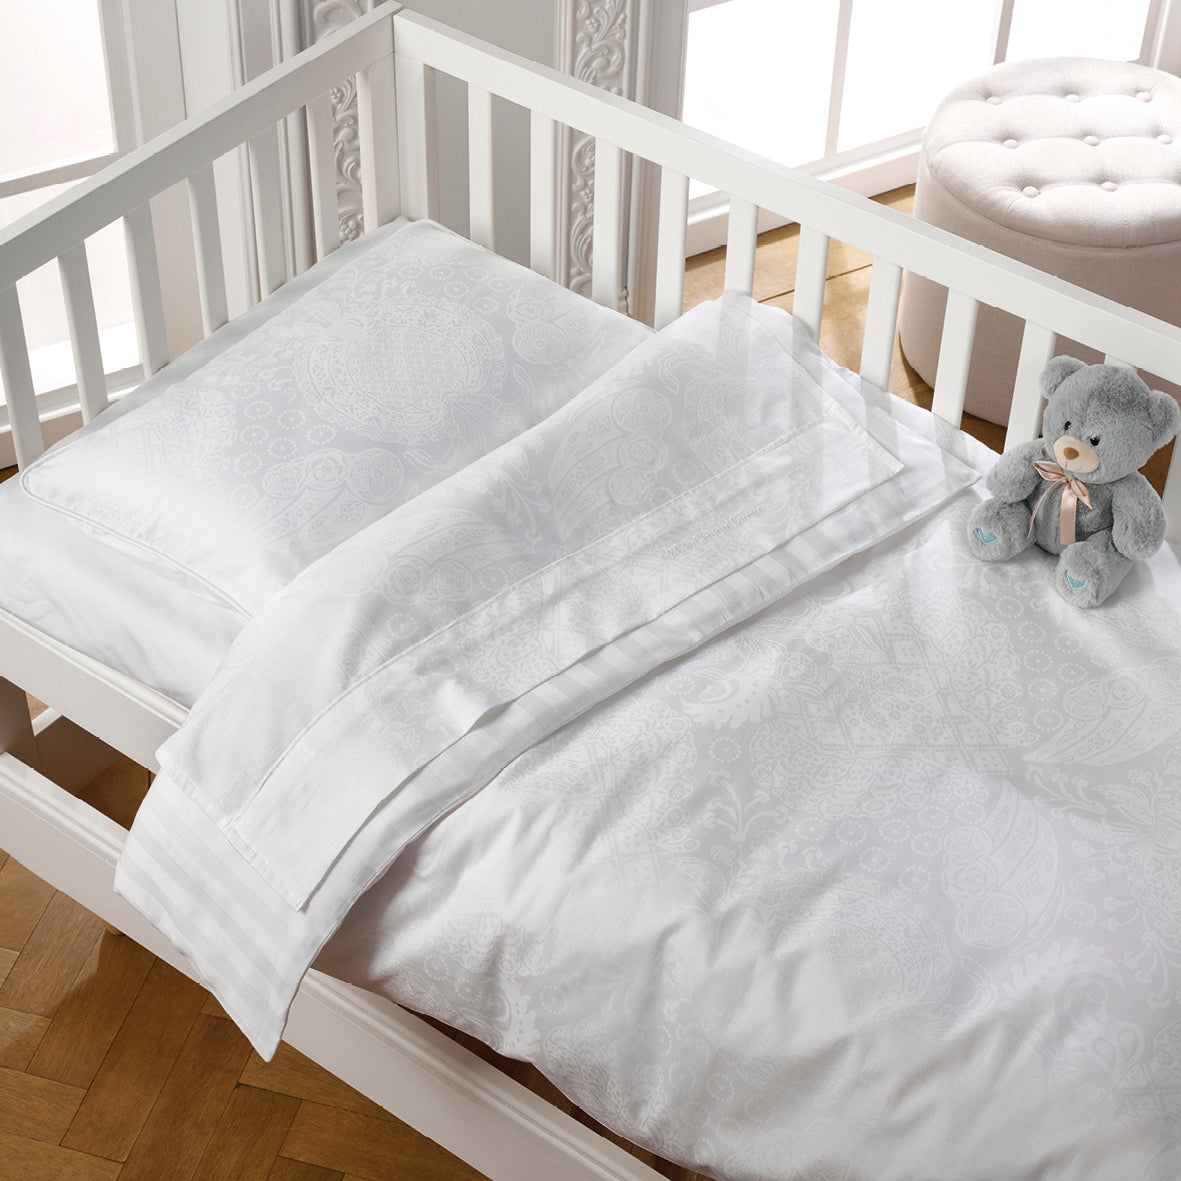 Couverture pour le bébé - ultra doux en 100% satin de coton tissé Jacquard Arles Blanc